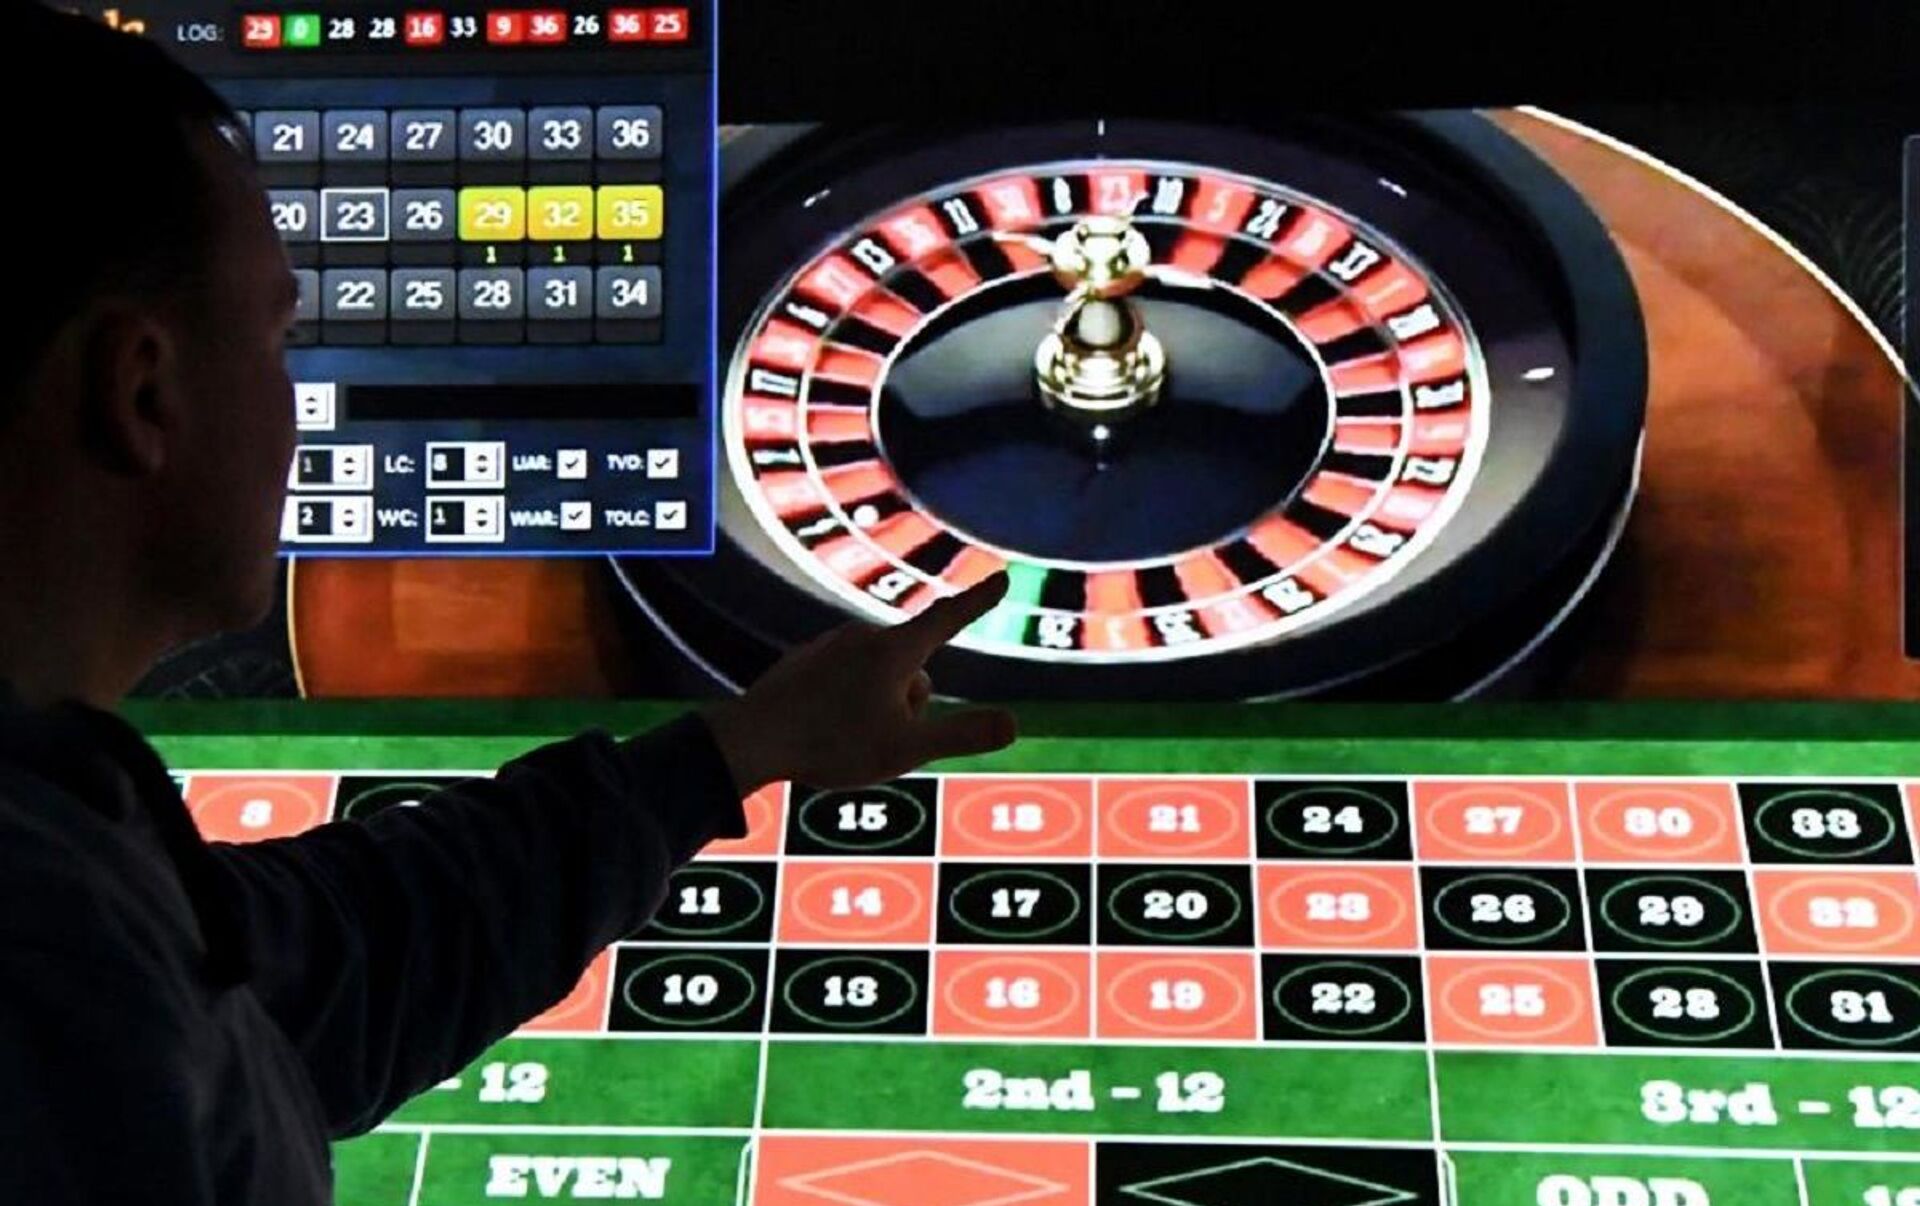 Take The Stress Out Of Türk Online Casinolar için En İyi Casino Oyun Geliştiricileri